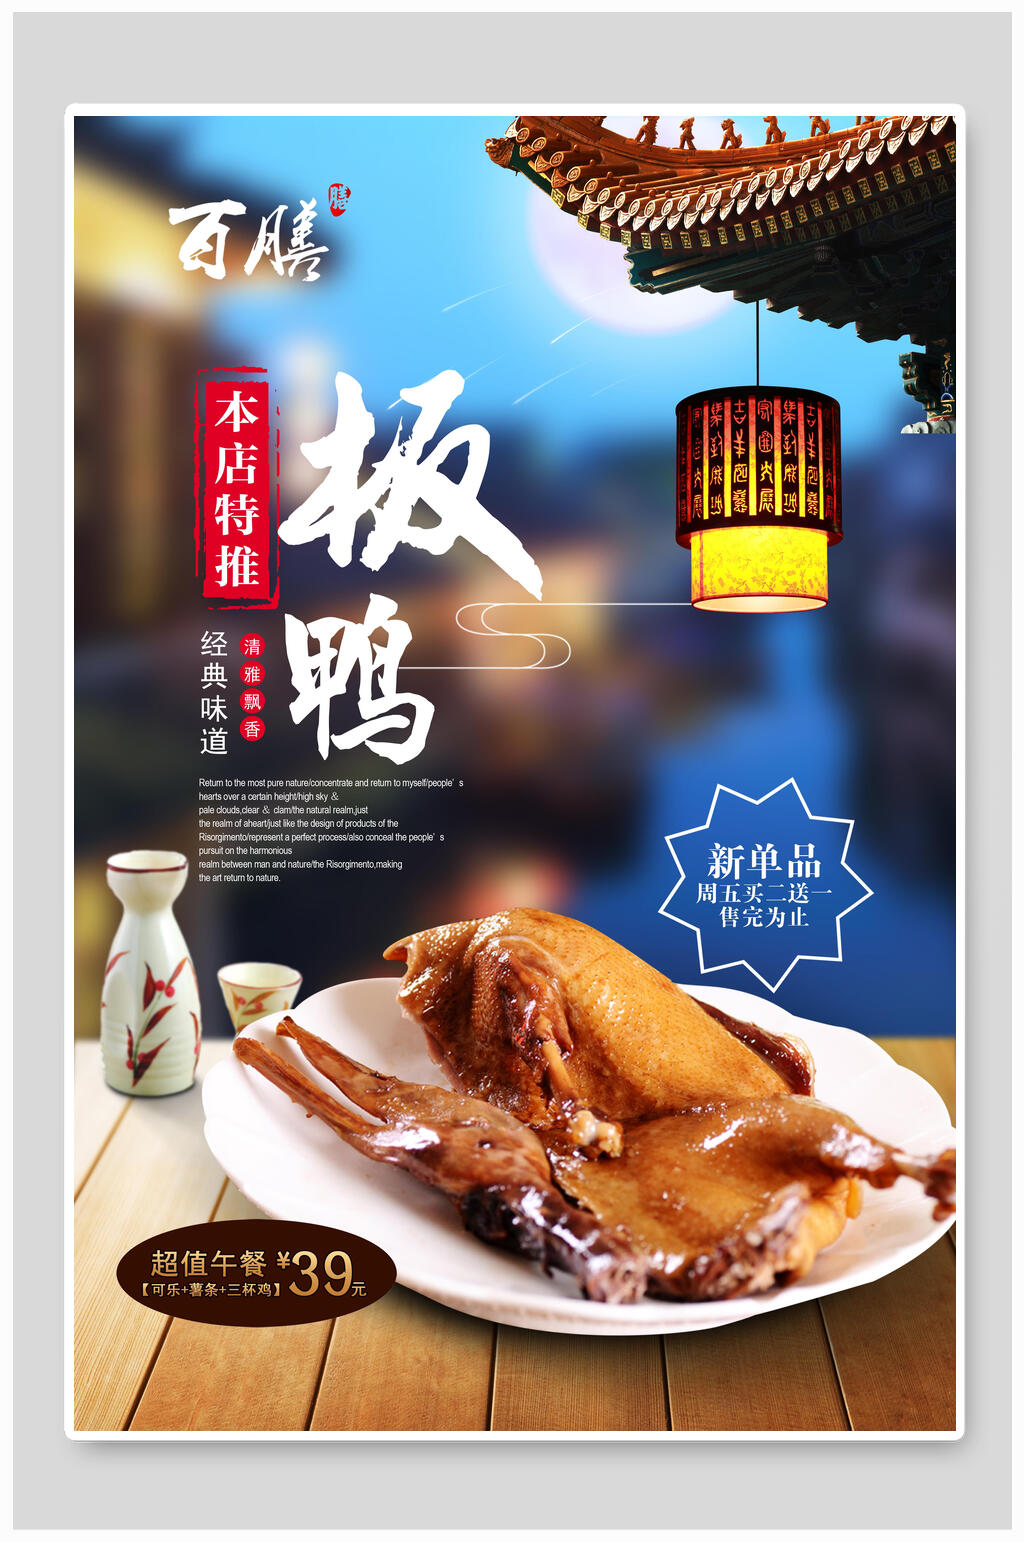 鸭肉美食海报素材免费下载,本作品是由小红1210上传的原创平面广告